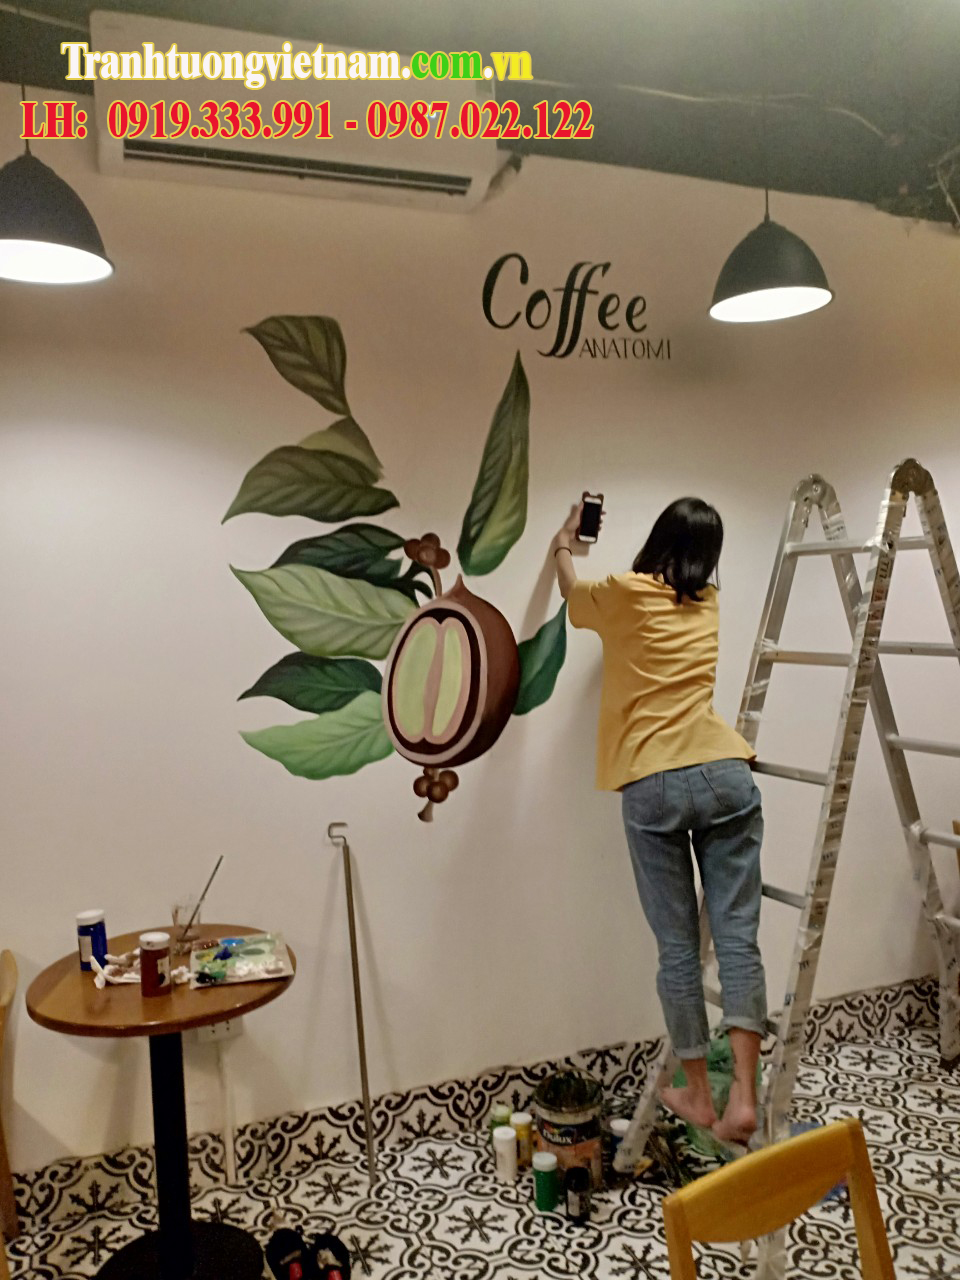 Mẫu vẽ tranh tường quán Cafe đơn giản mà đẹp